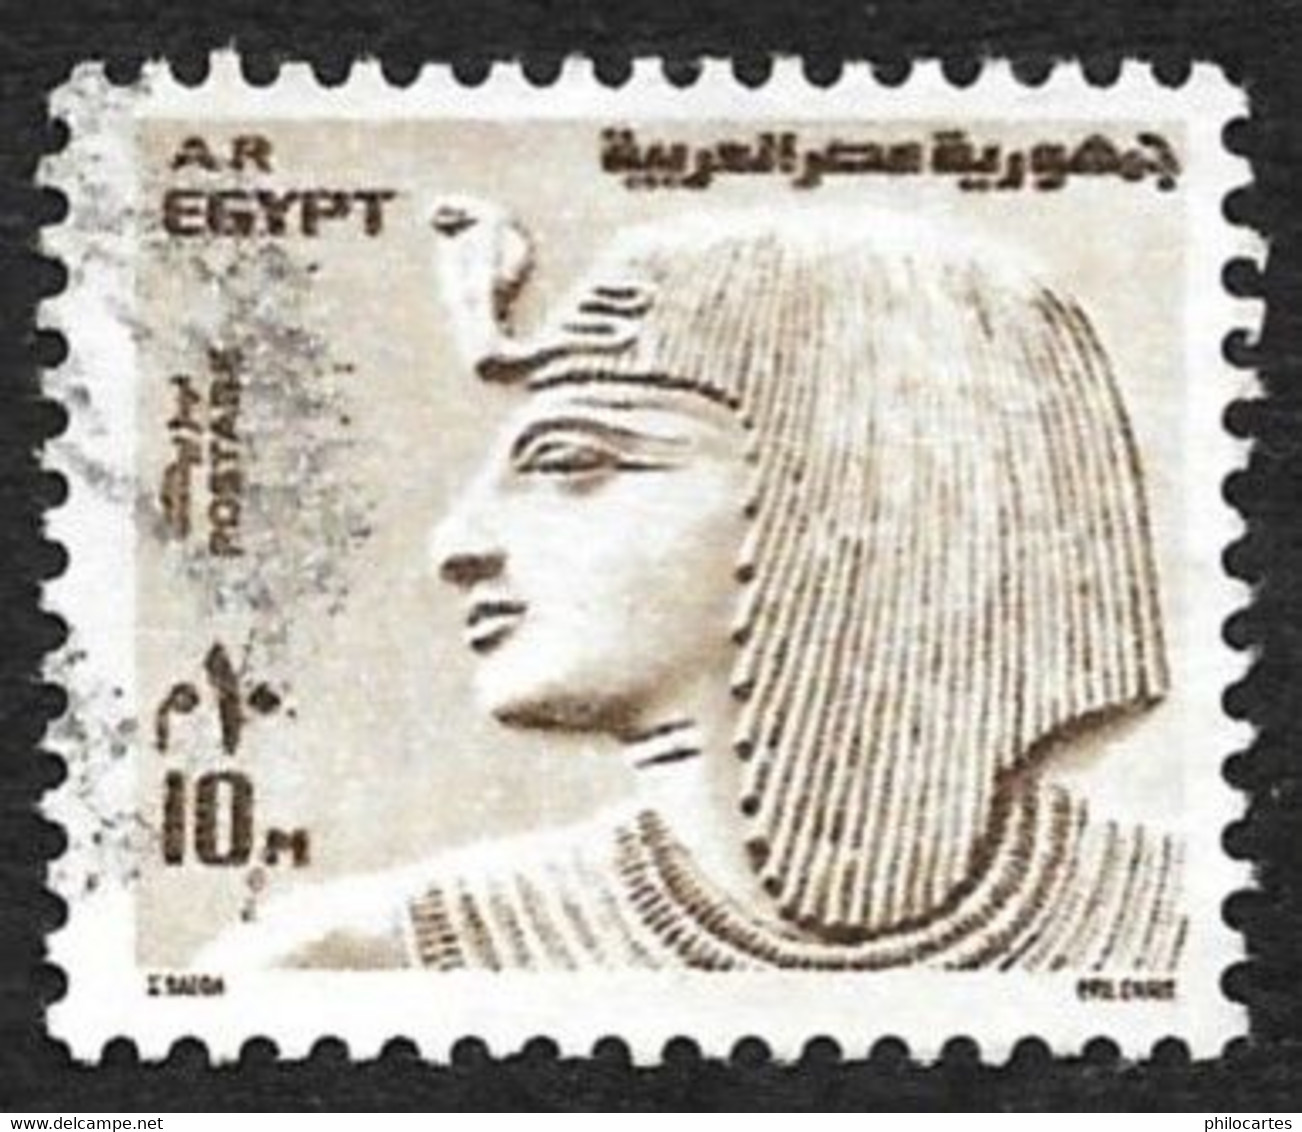 EGYPTE 1973  -  YT 926  -  Sethi 1°   - Oblitéré - Gebraucht